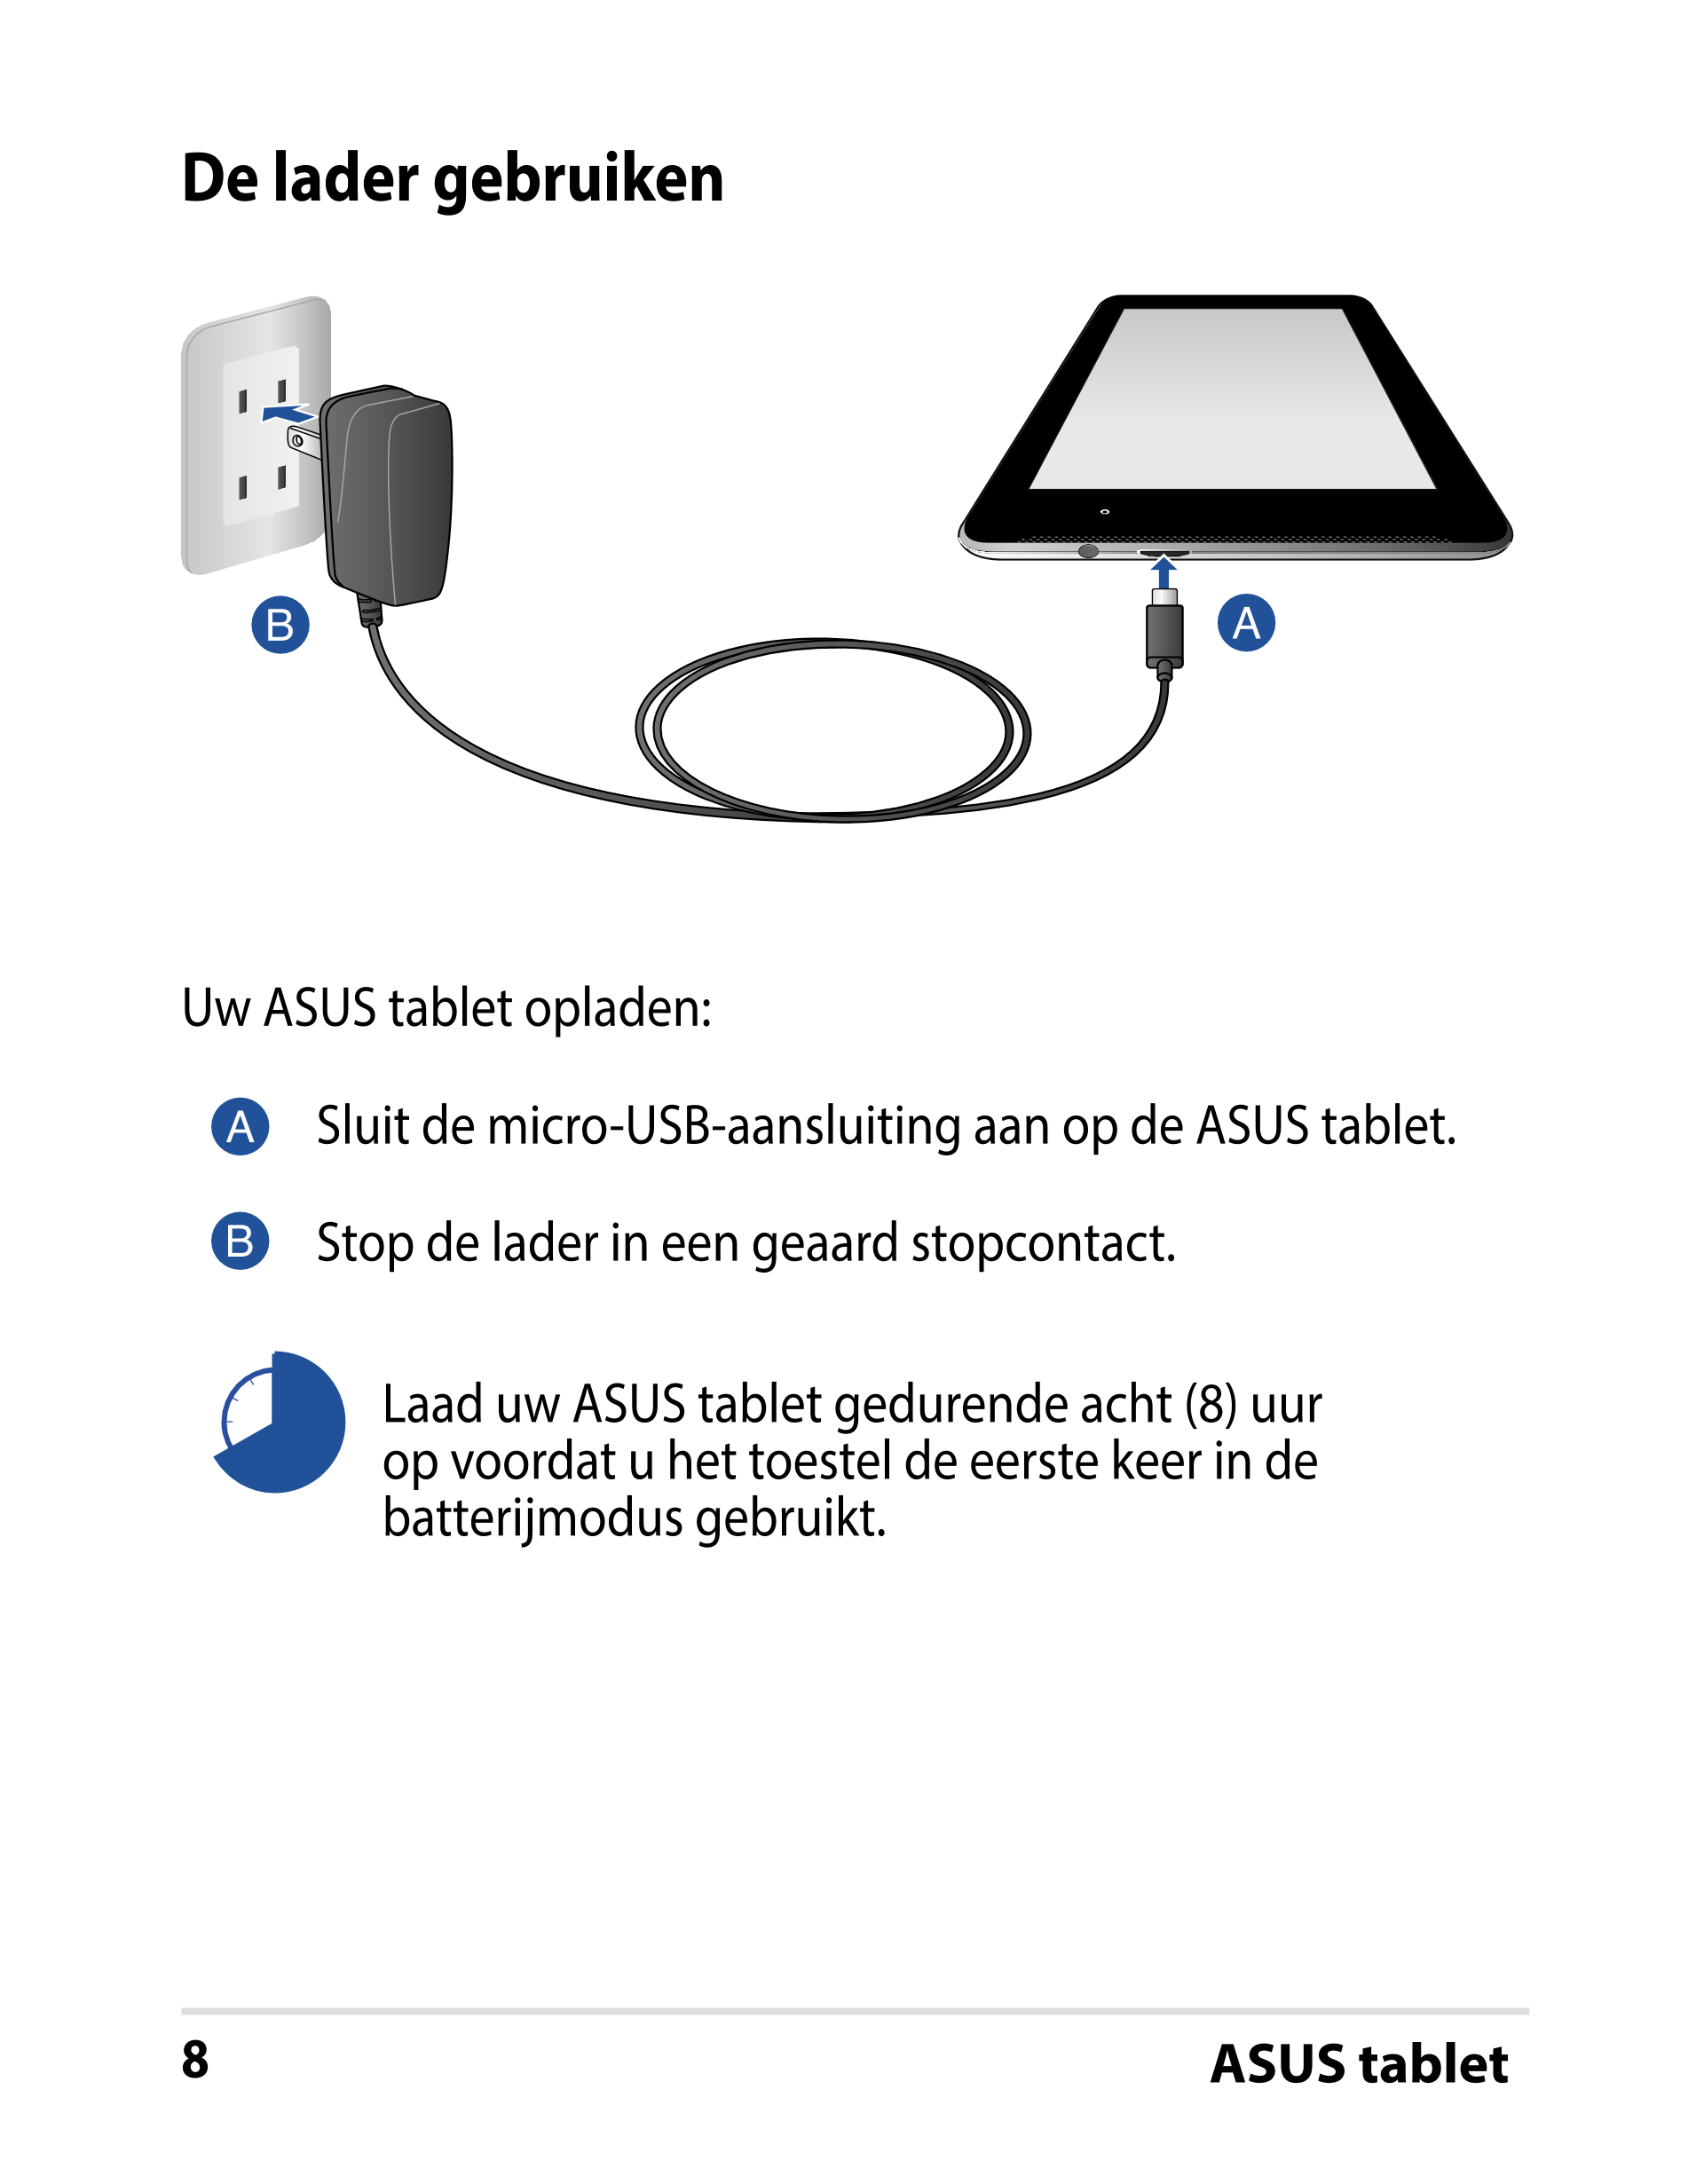 De lader gebruiken
Uw ASUS tablet opladen:
Sluit de micro-USB-aansluiting aan op de ASUS tablet.
Stop de lader in een geaard sto